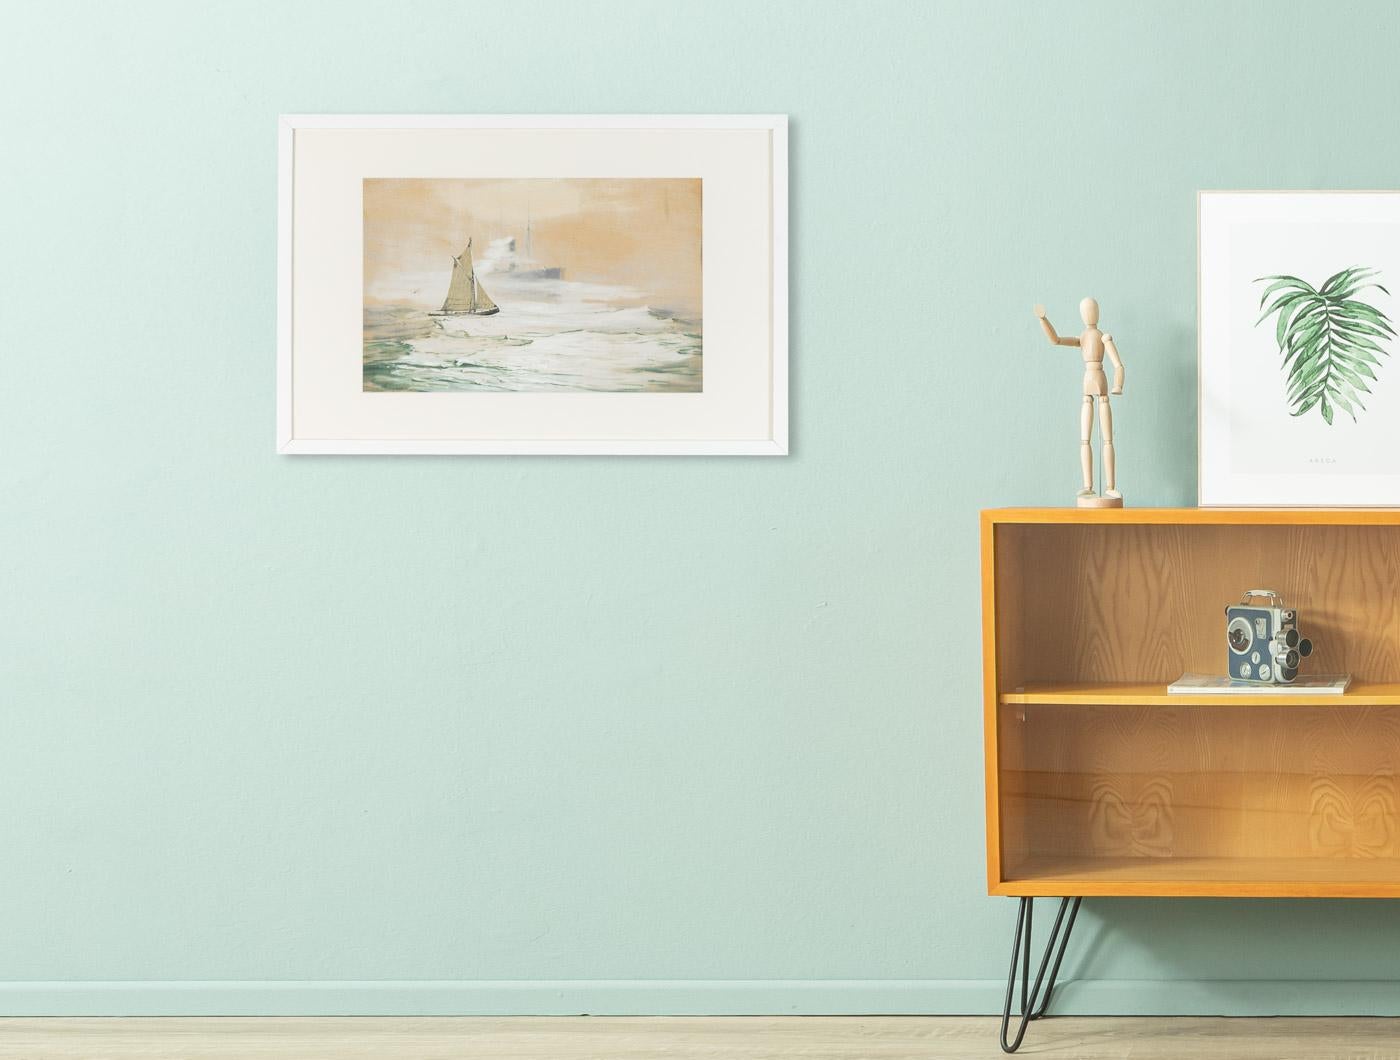 Georg ROMIN Pittoreske Landschaft mit einem kleinen Segelboot auf dem Meer im romantischen Stil. Aufhängefertig, gerahmt mit Passepartout in einem handgefertigten Echtholz-Bilderrahmen in Weiß hinter entspiegeltem Acrylglas.